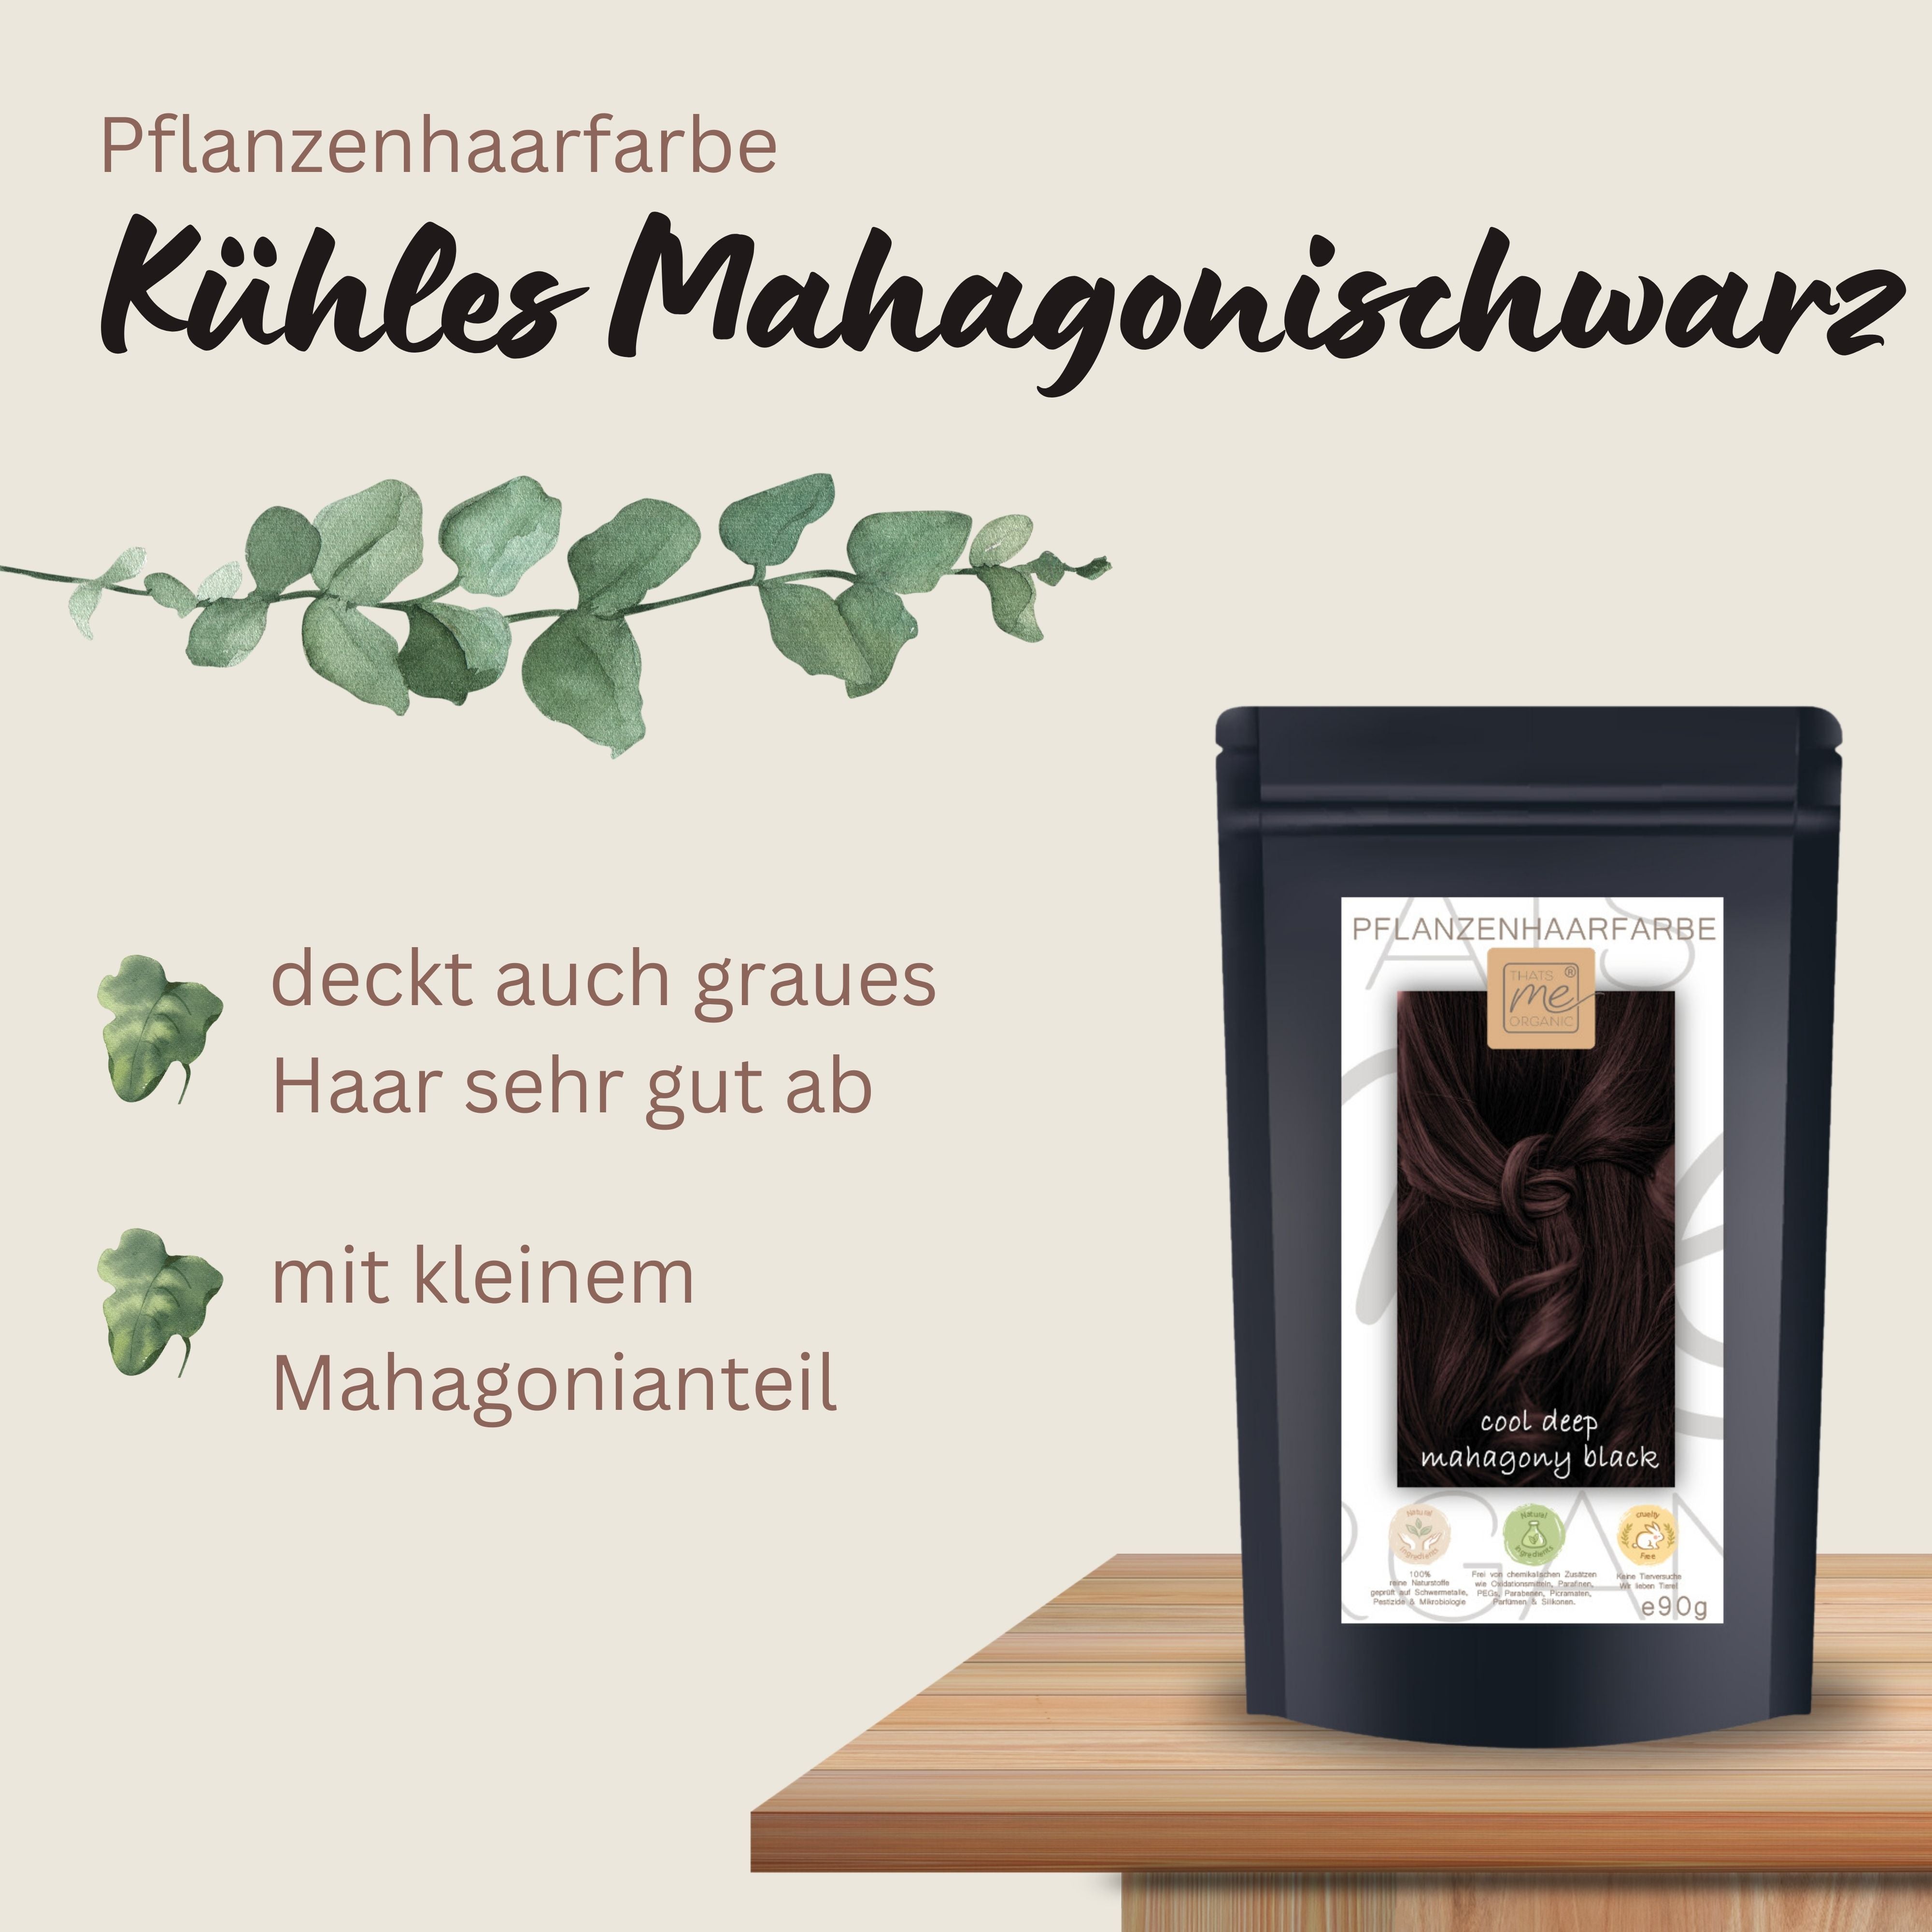 Profi-Pflanzenhaarfarbe SET kühles dunkles Mahagony-Schwarz "cool deep mahagony black"